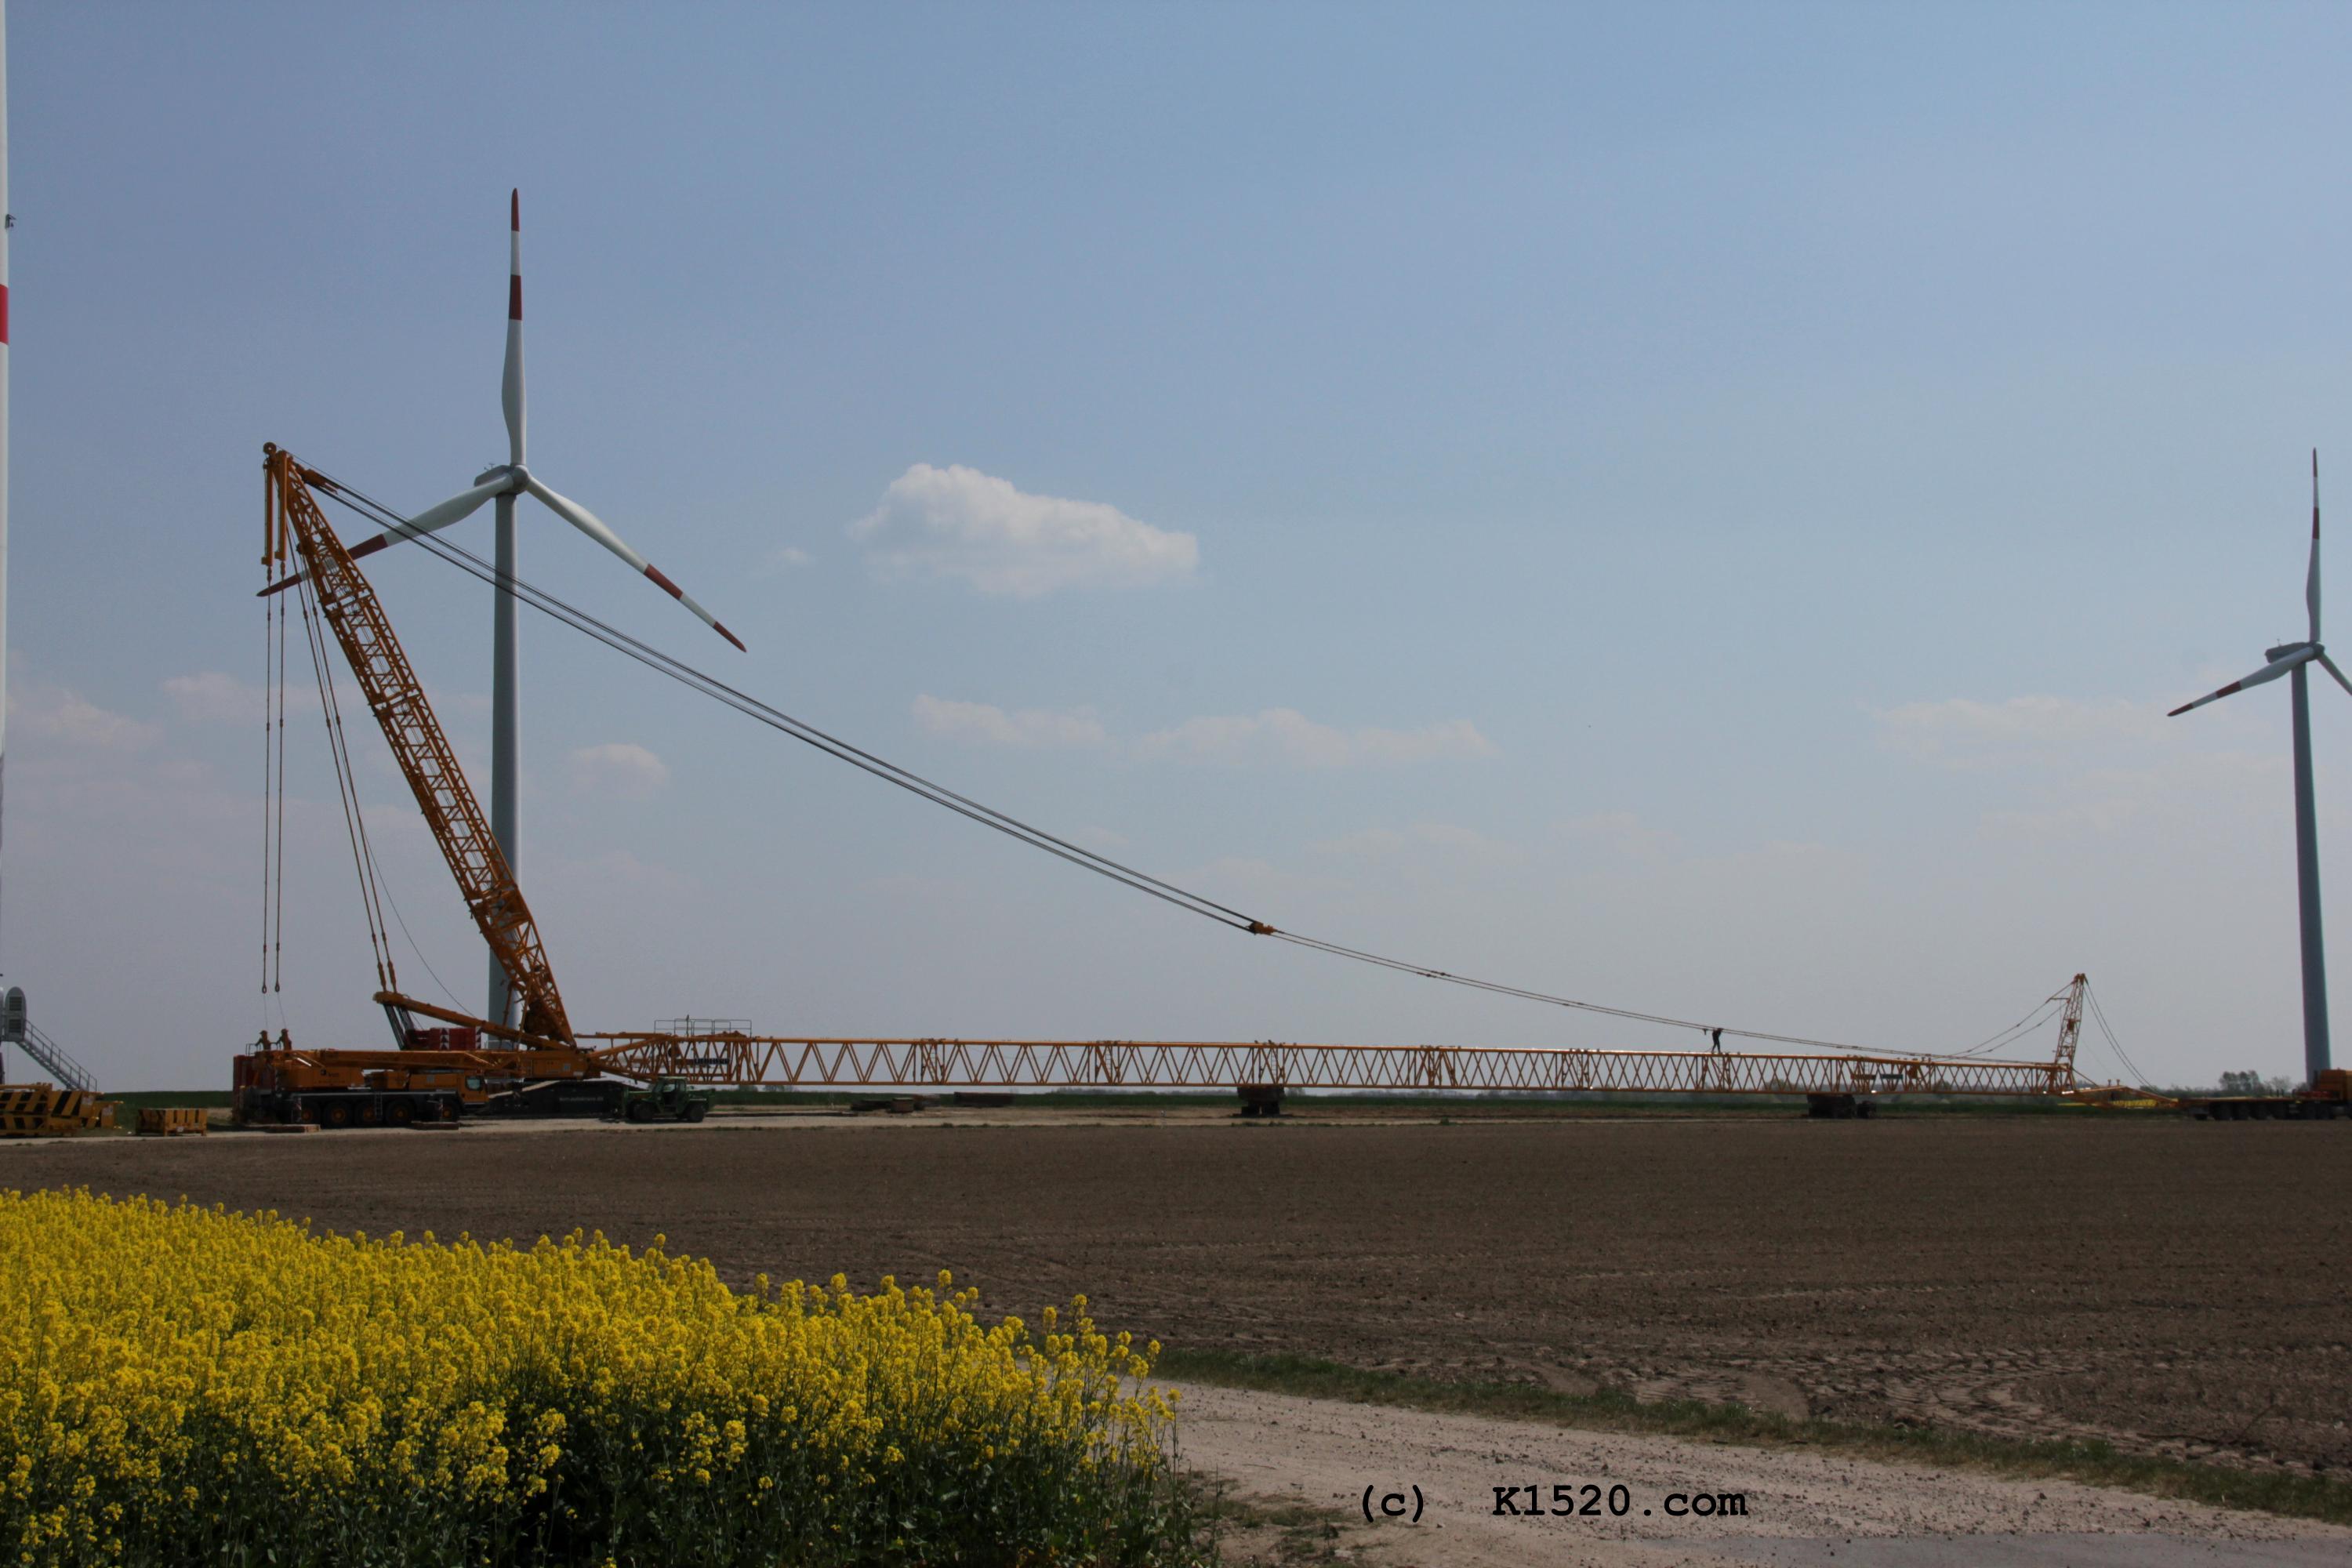 Reparatur Windräder im Windpark Arneburg/Elbe 04/2020,
  Kraneinsatz